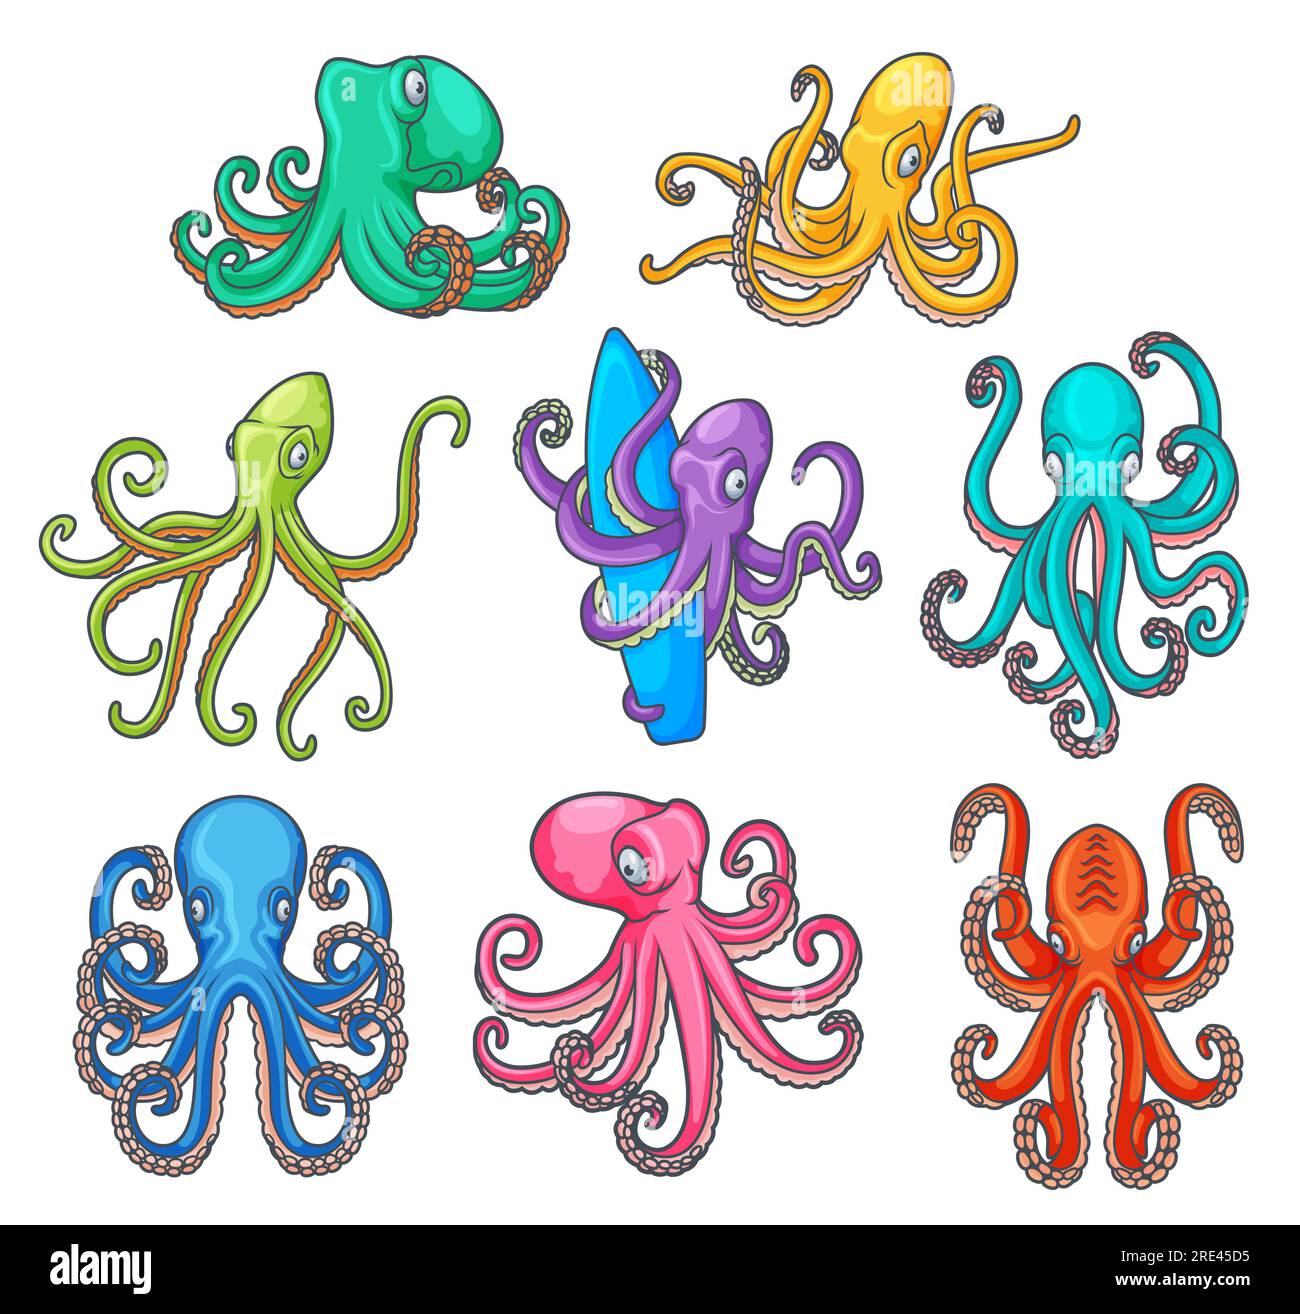 Polpo con tentacoli curvi, mostri dei cartoni animati oceanici o marini. Graziosi animali marini con braccia colorate e ventose che tengono in mano la tavola da surf e la fauna sottomarina Illustrazione Vettoriale